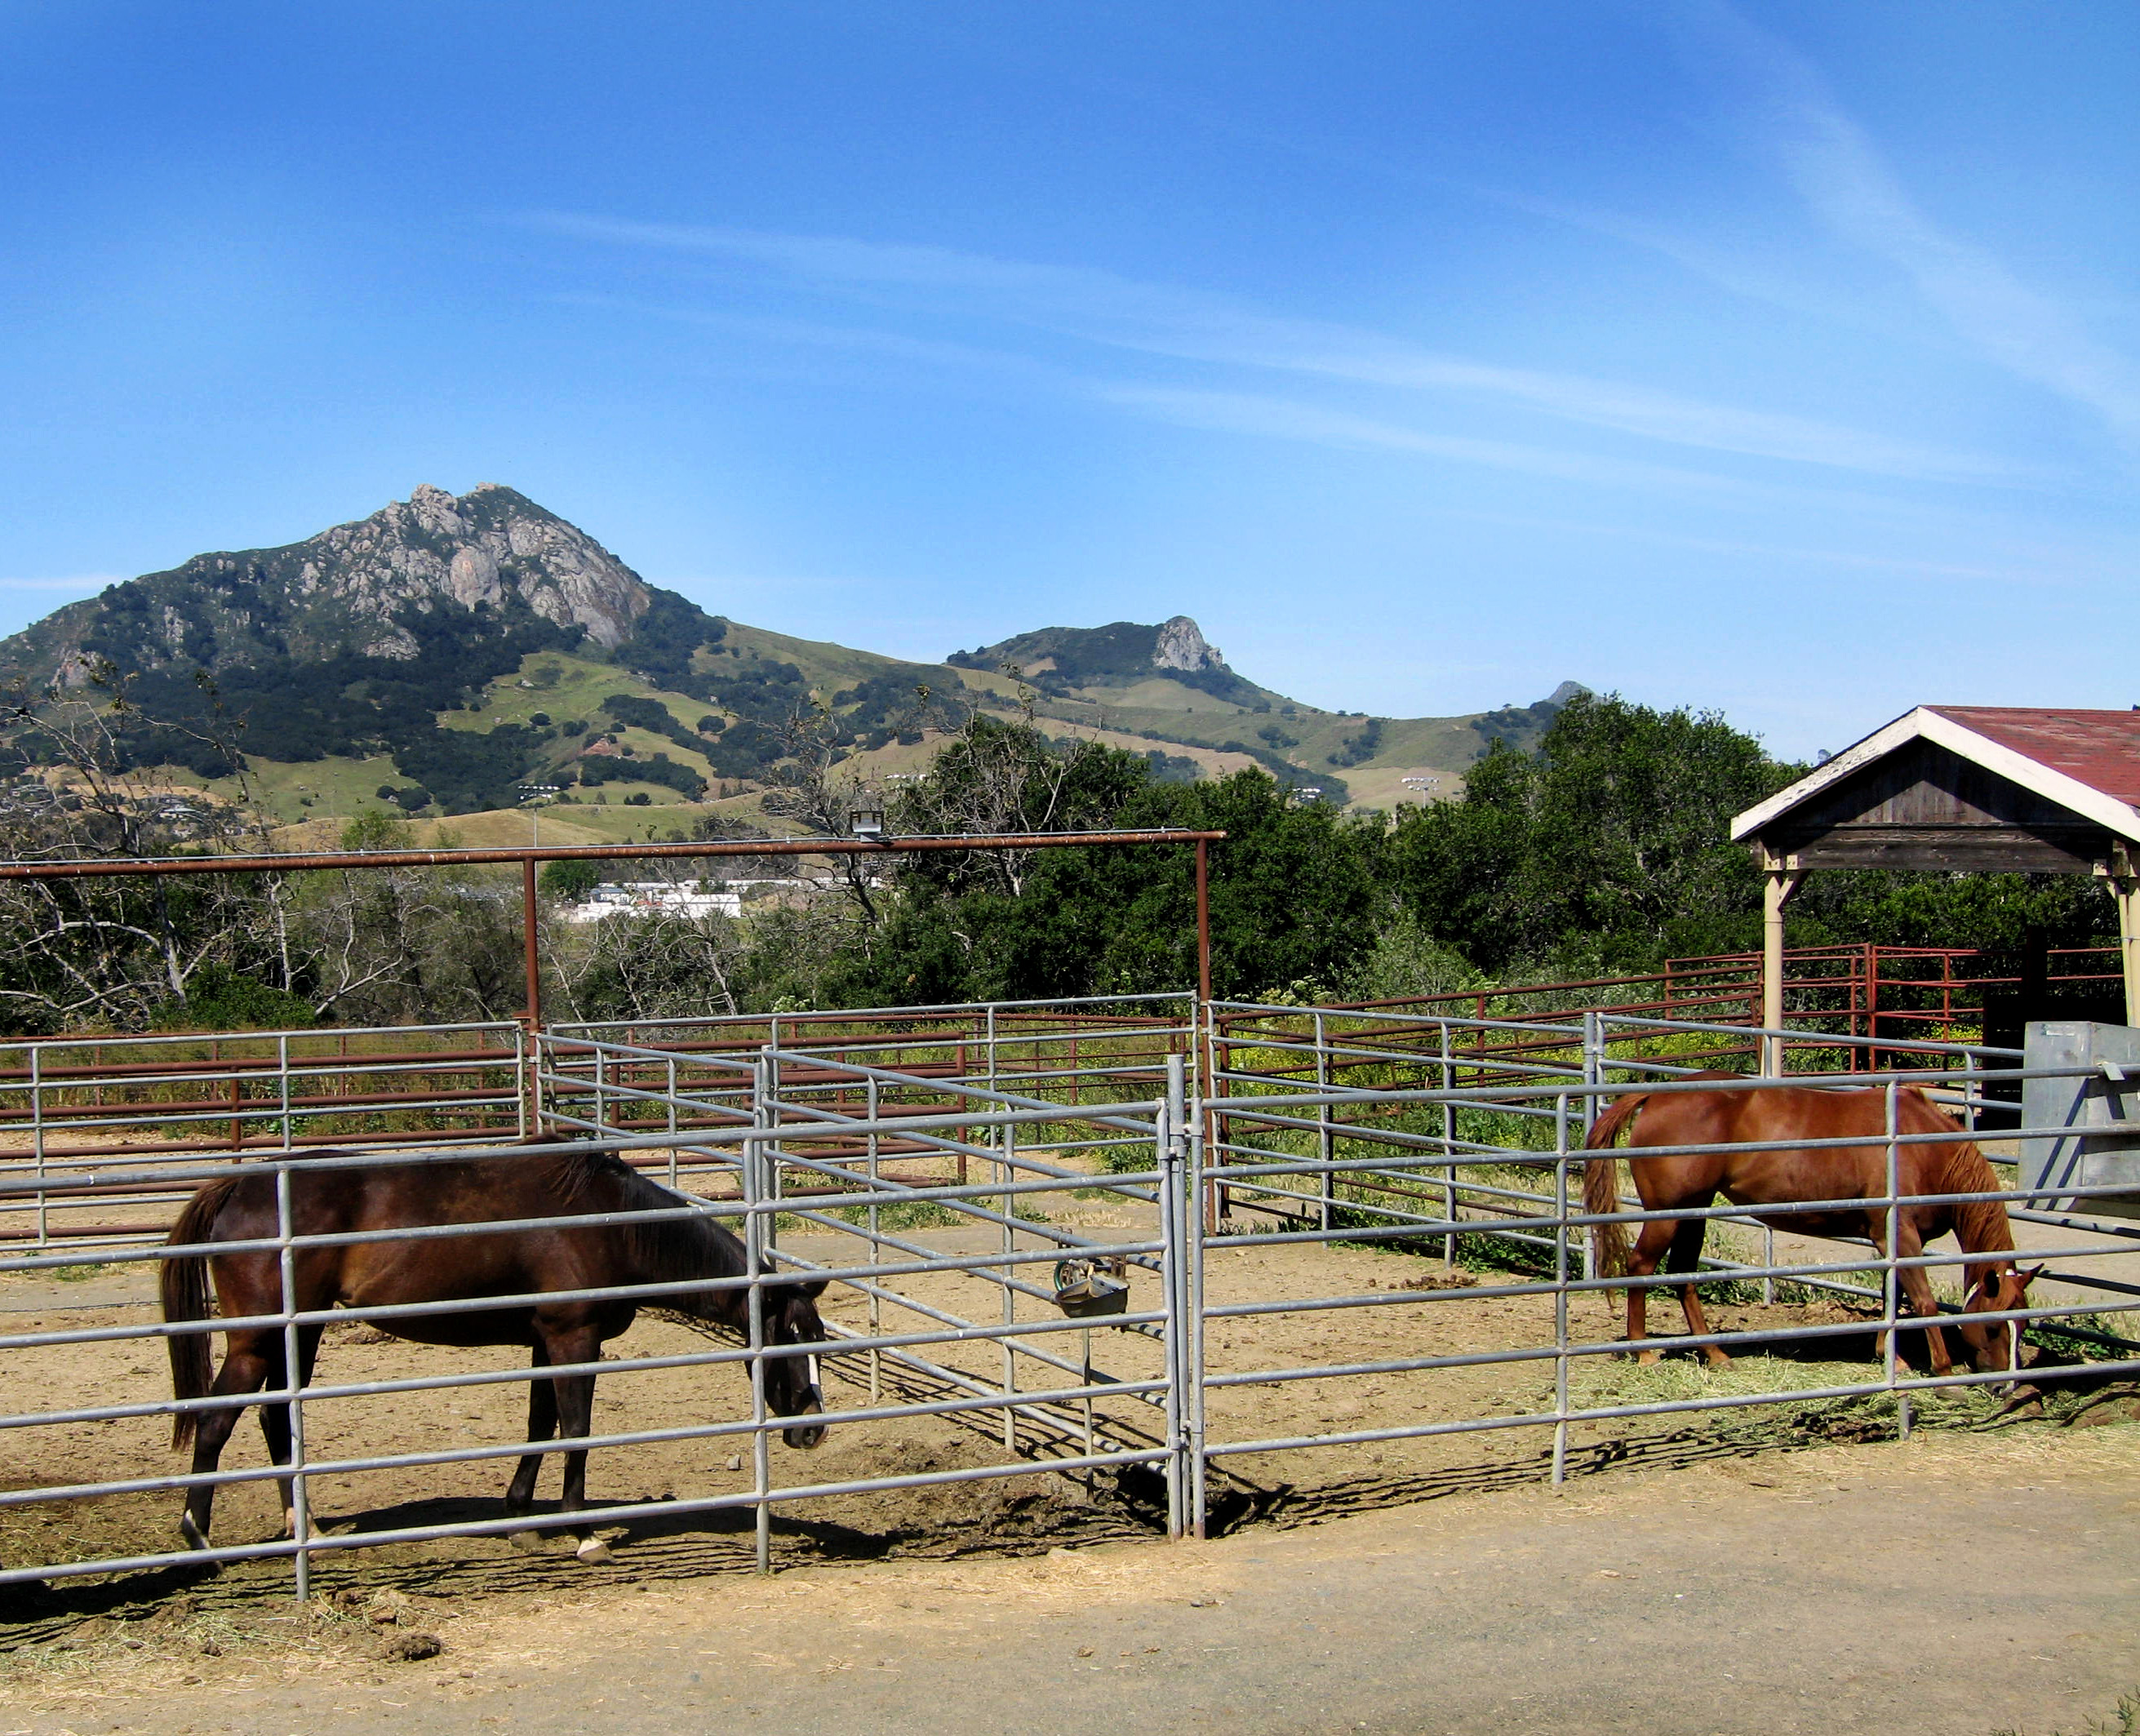 Zwei Mustang Pferde auf einem Pferdehof, im Hintergrund Gebirge